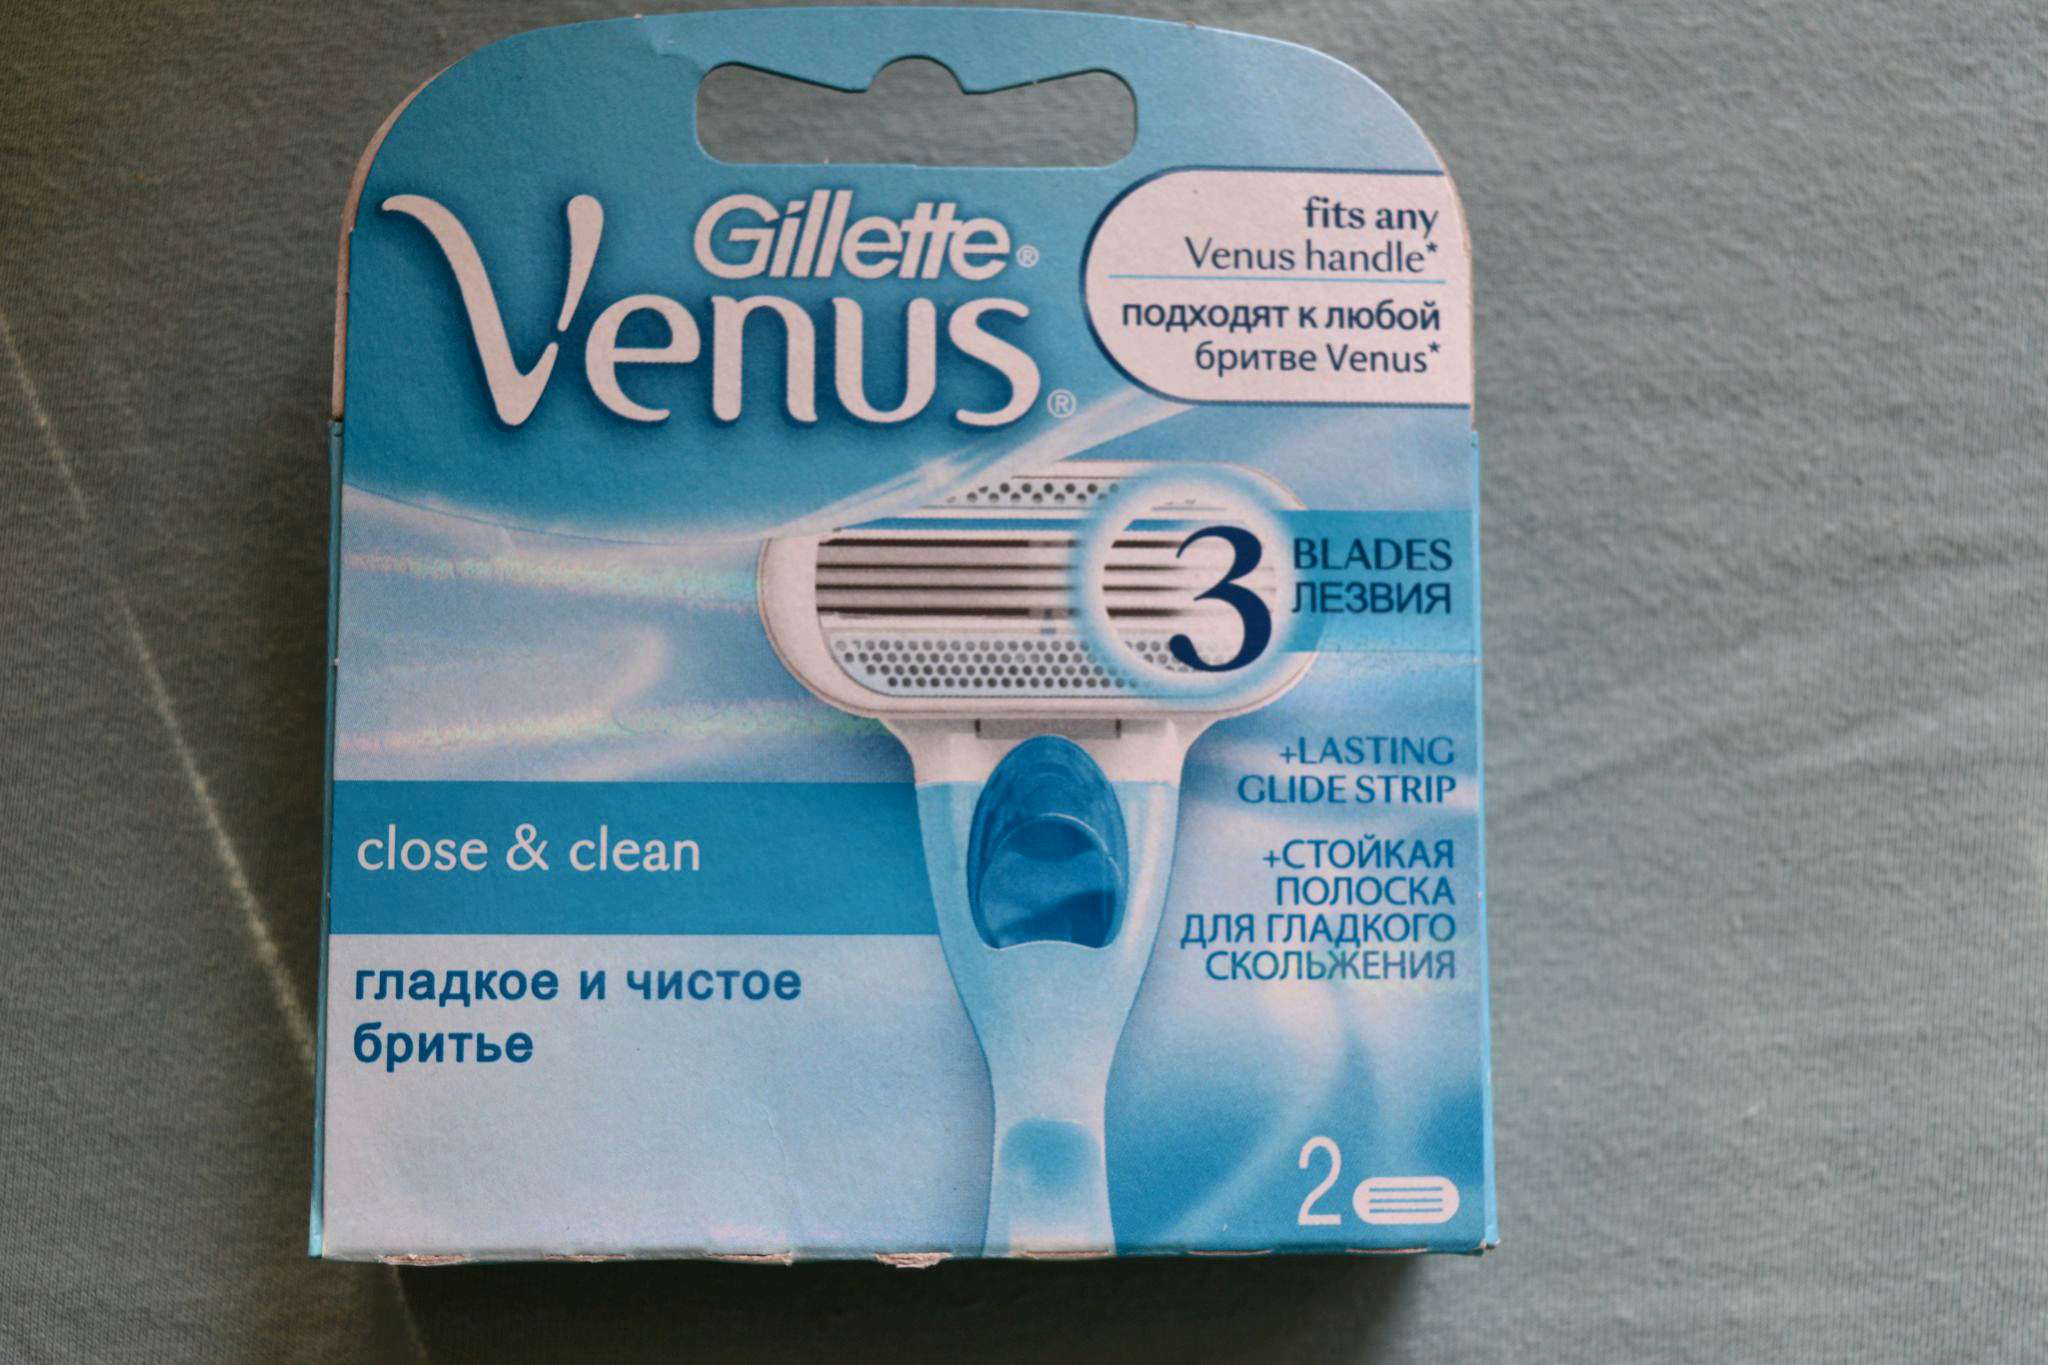 Сменные кассеты для бритья Venus заказывал жене в первый раз